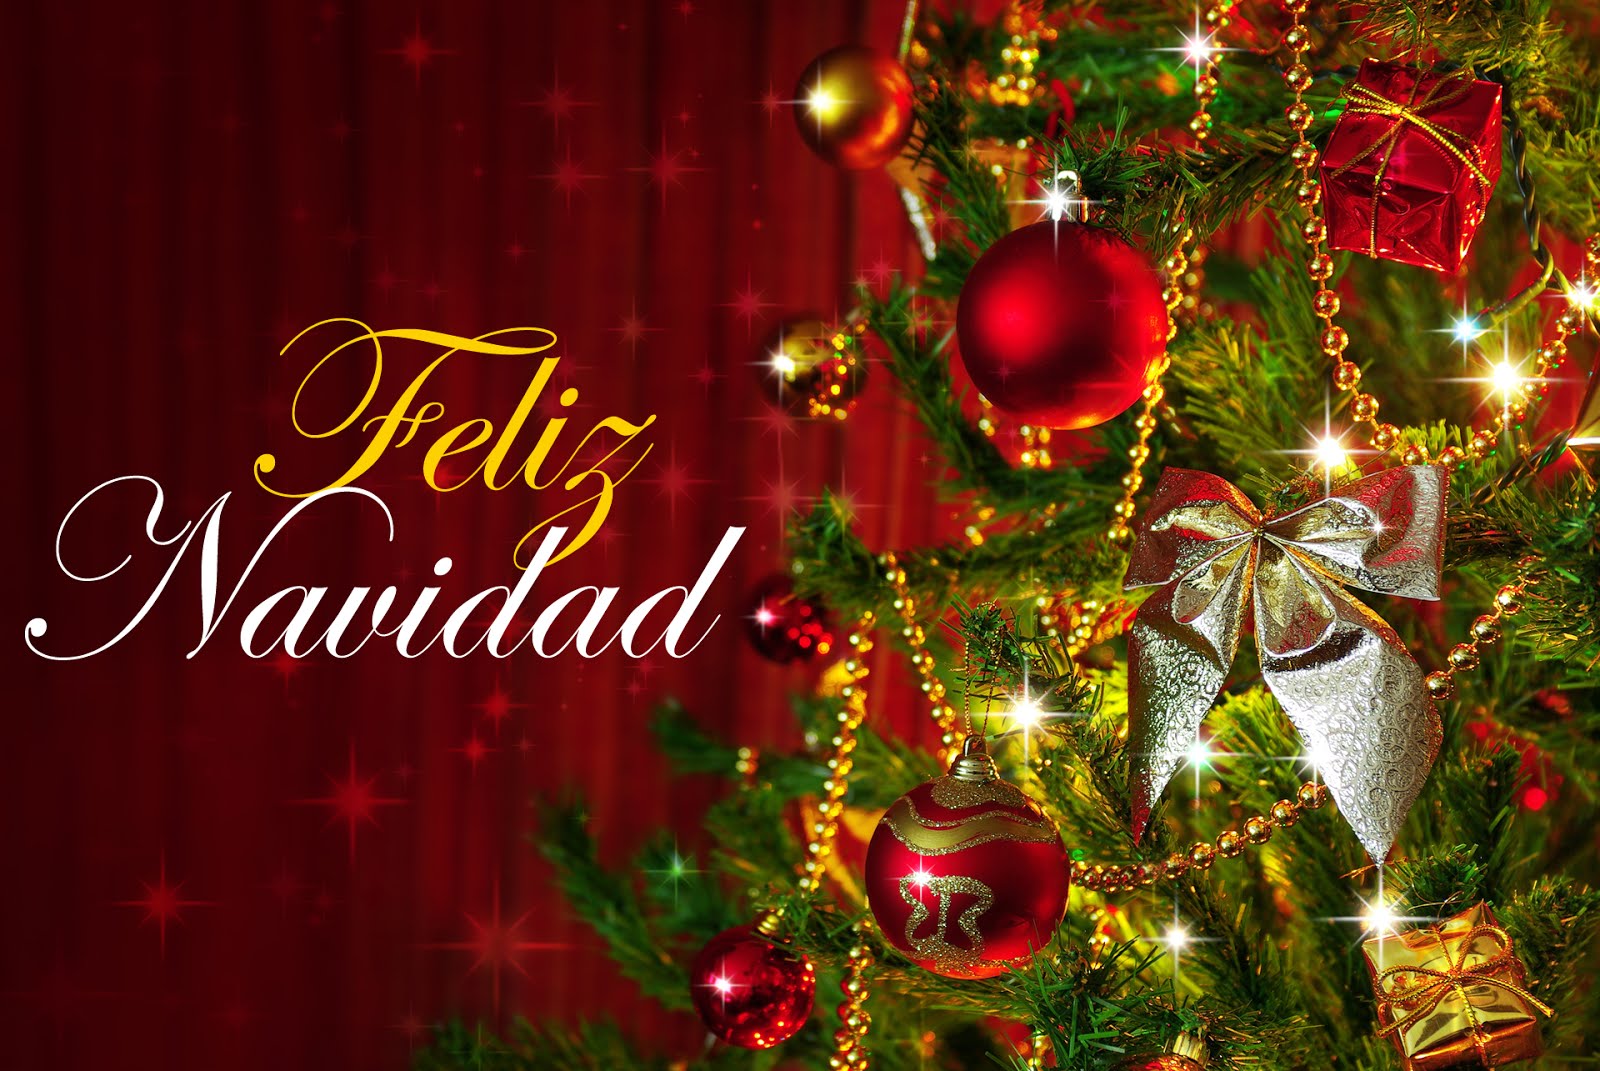 tapete navidad,weihnachtsschmuck,weihnachtsdekoration,weihnachten,weihnachtsbaum,heiligabend